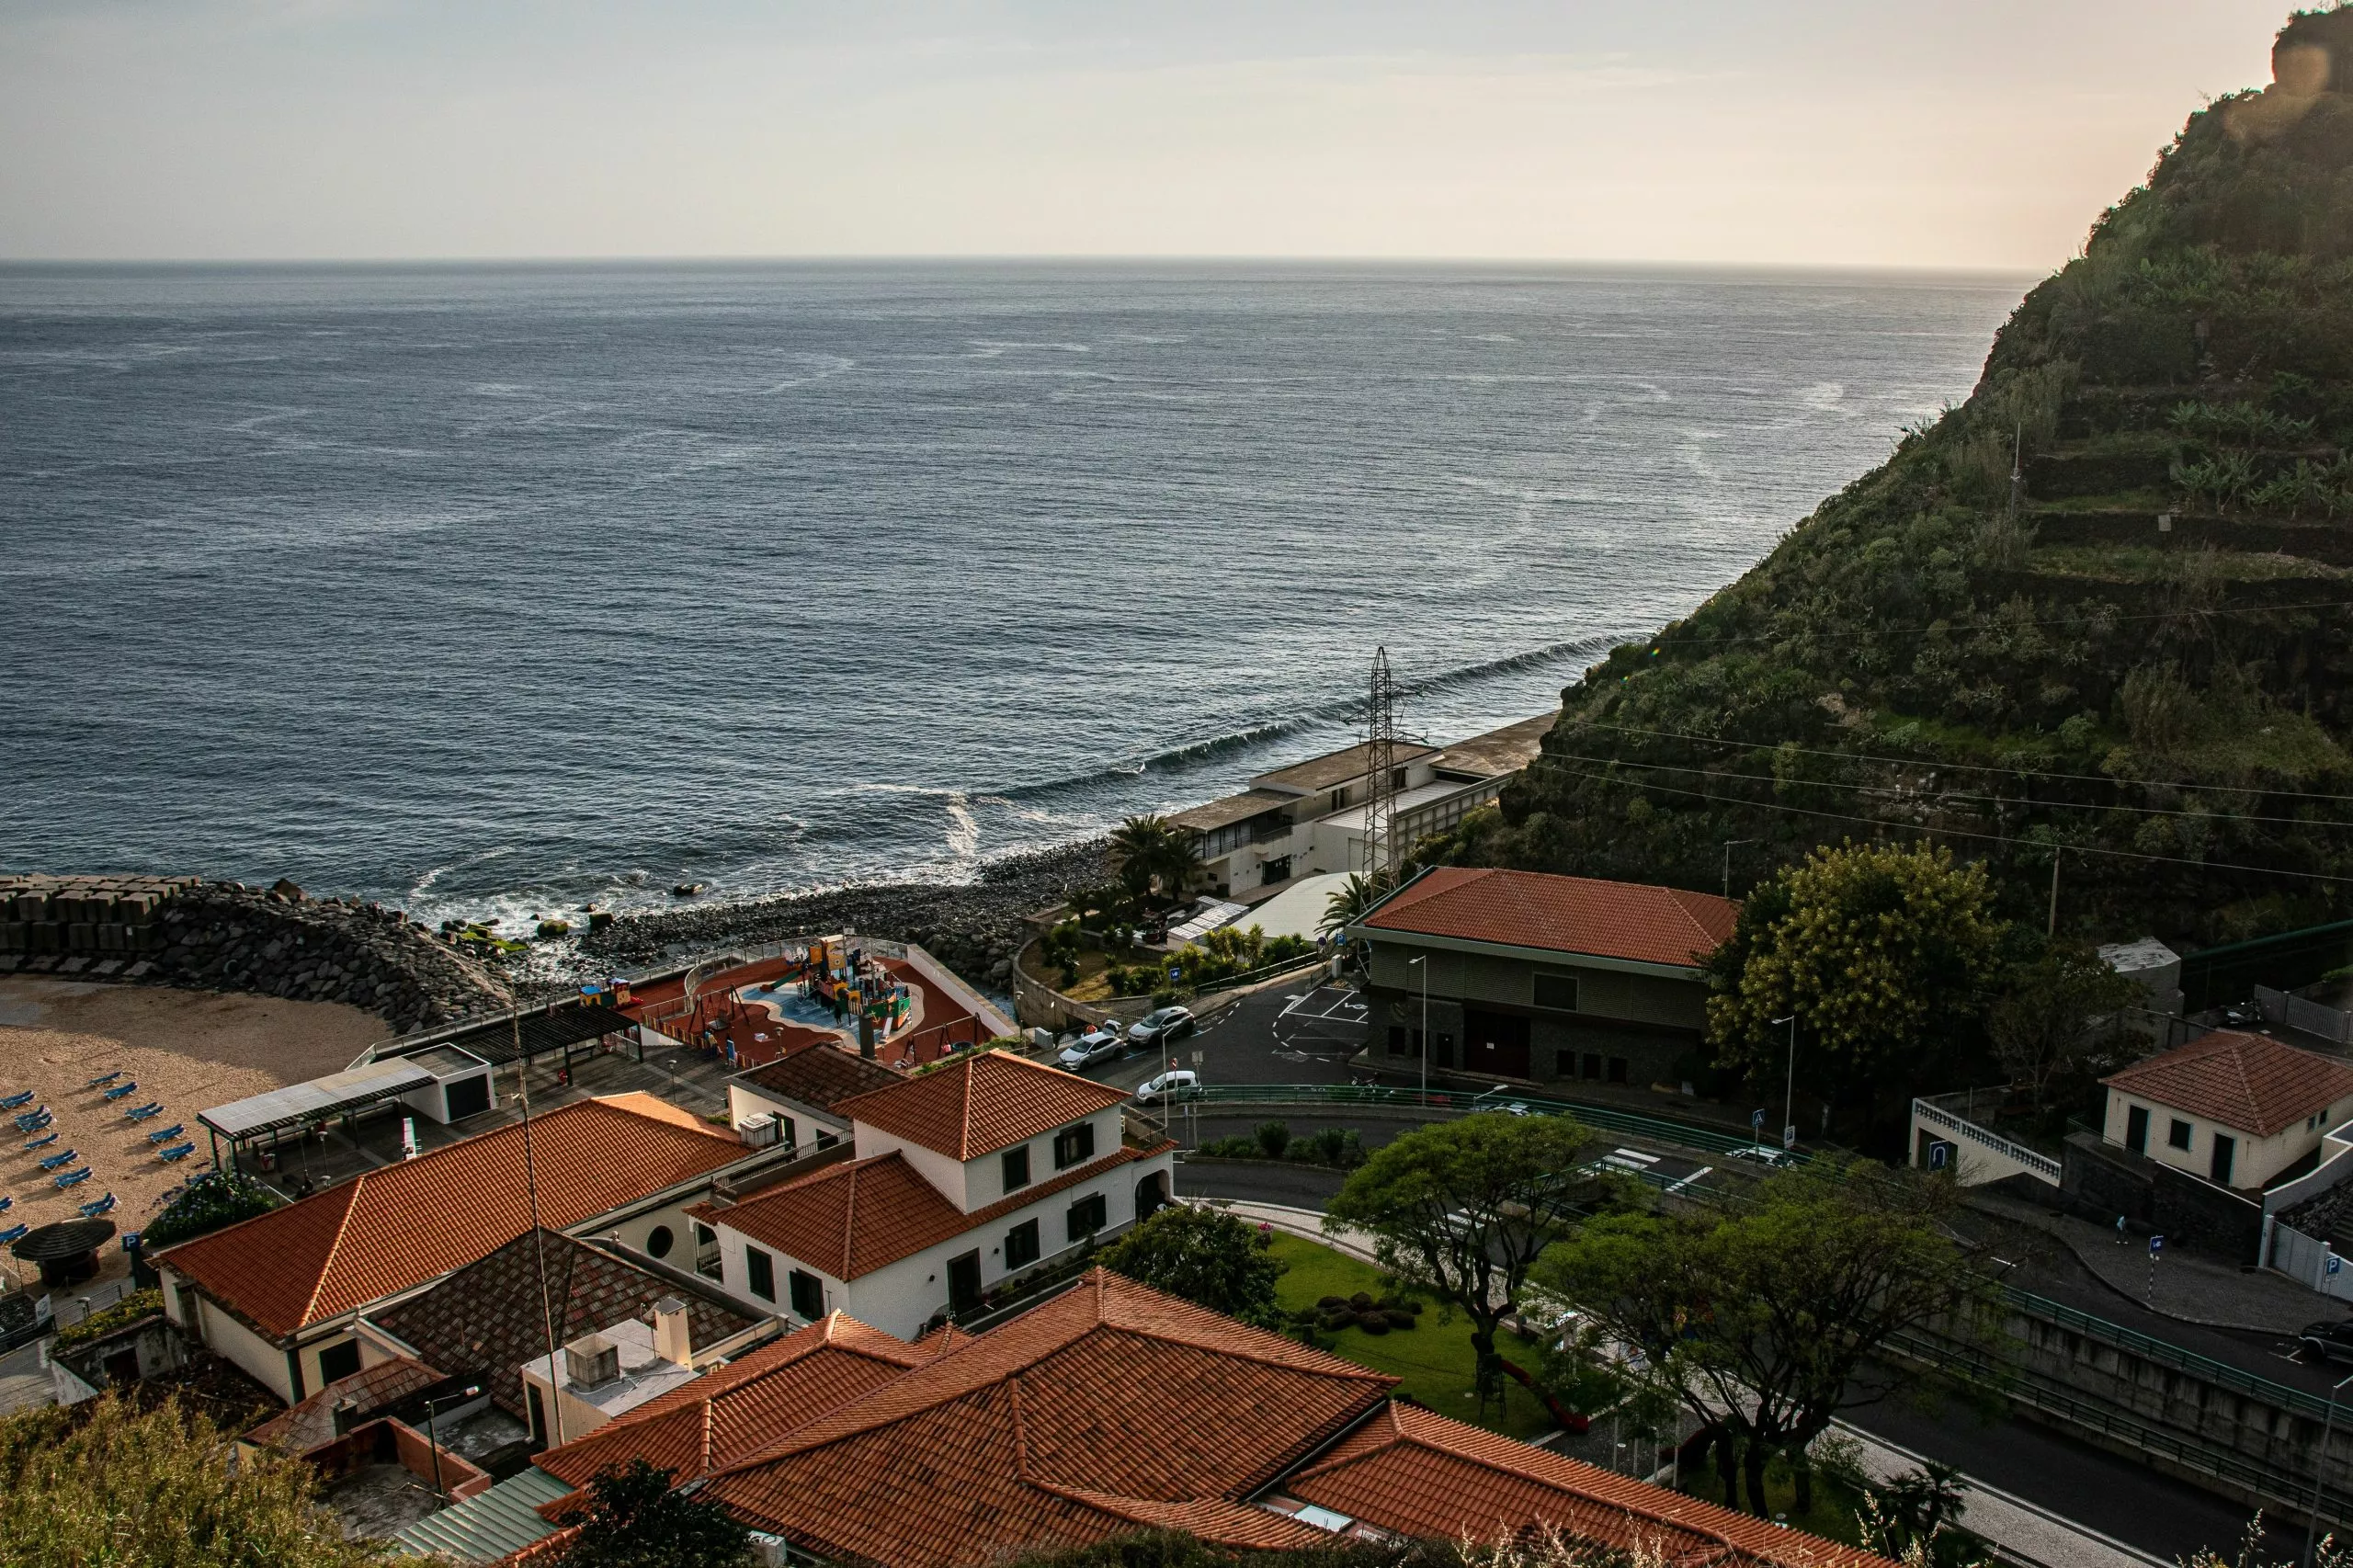 Aerial view of a bay with houses in Estreito da Calheta